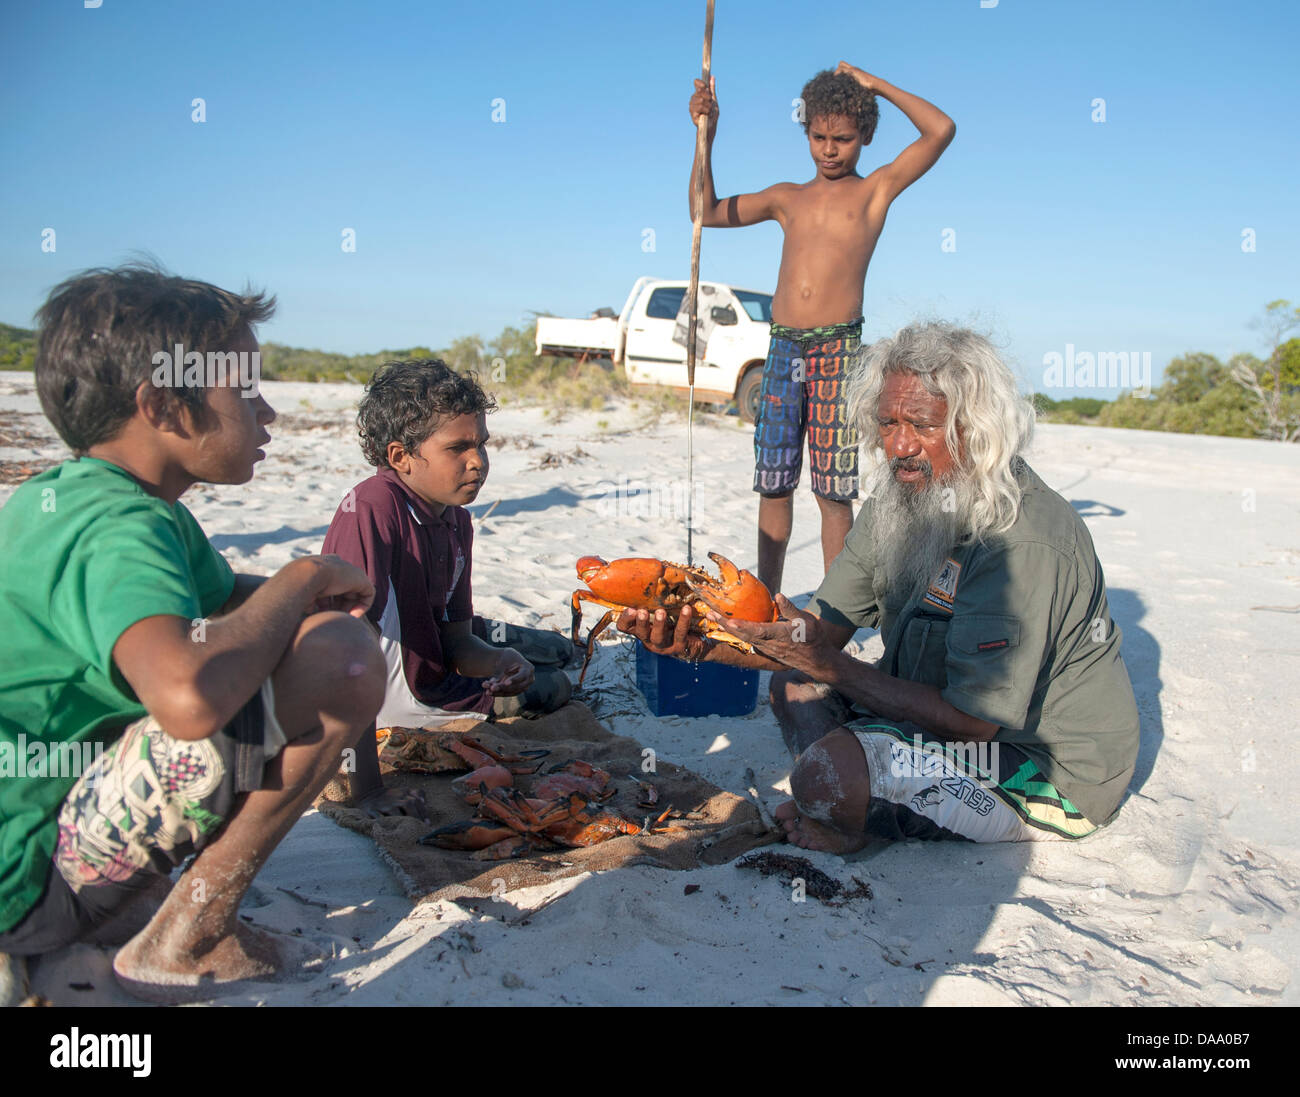 Aboriginal Camp